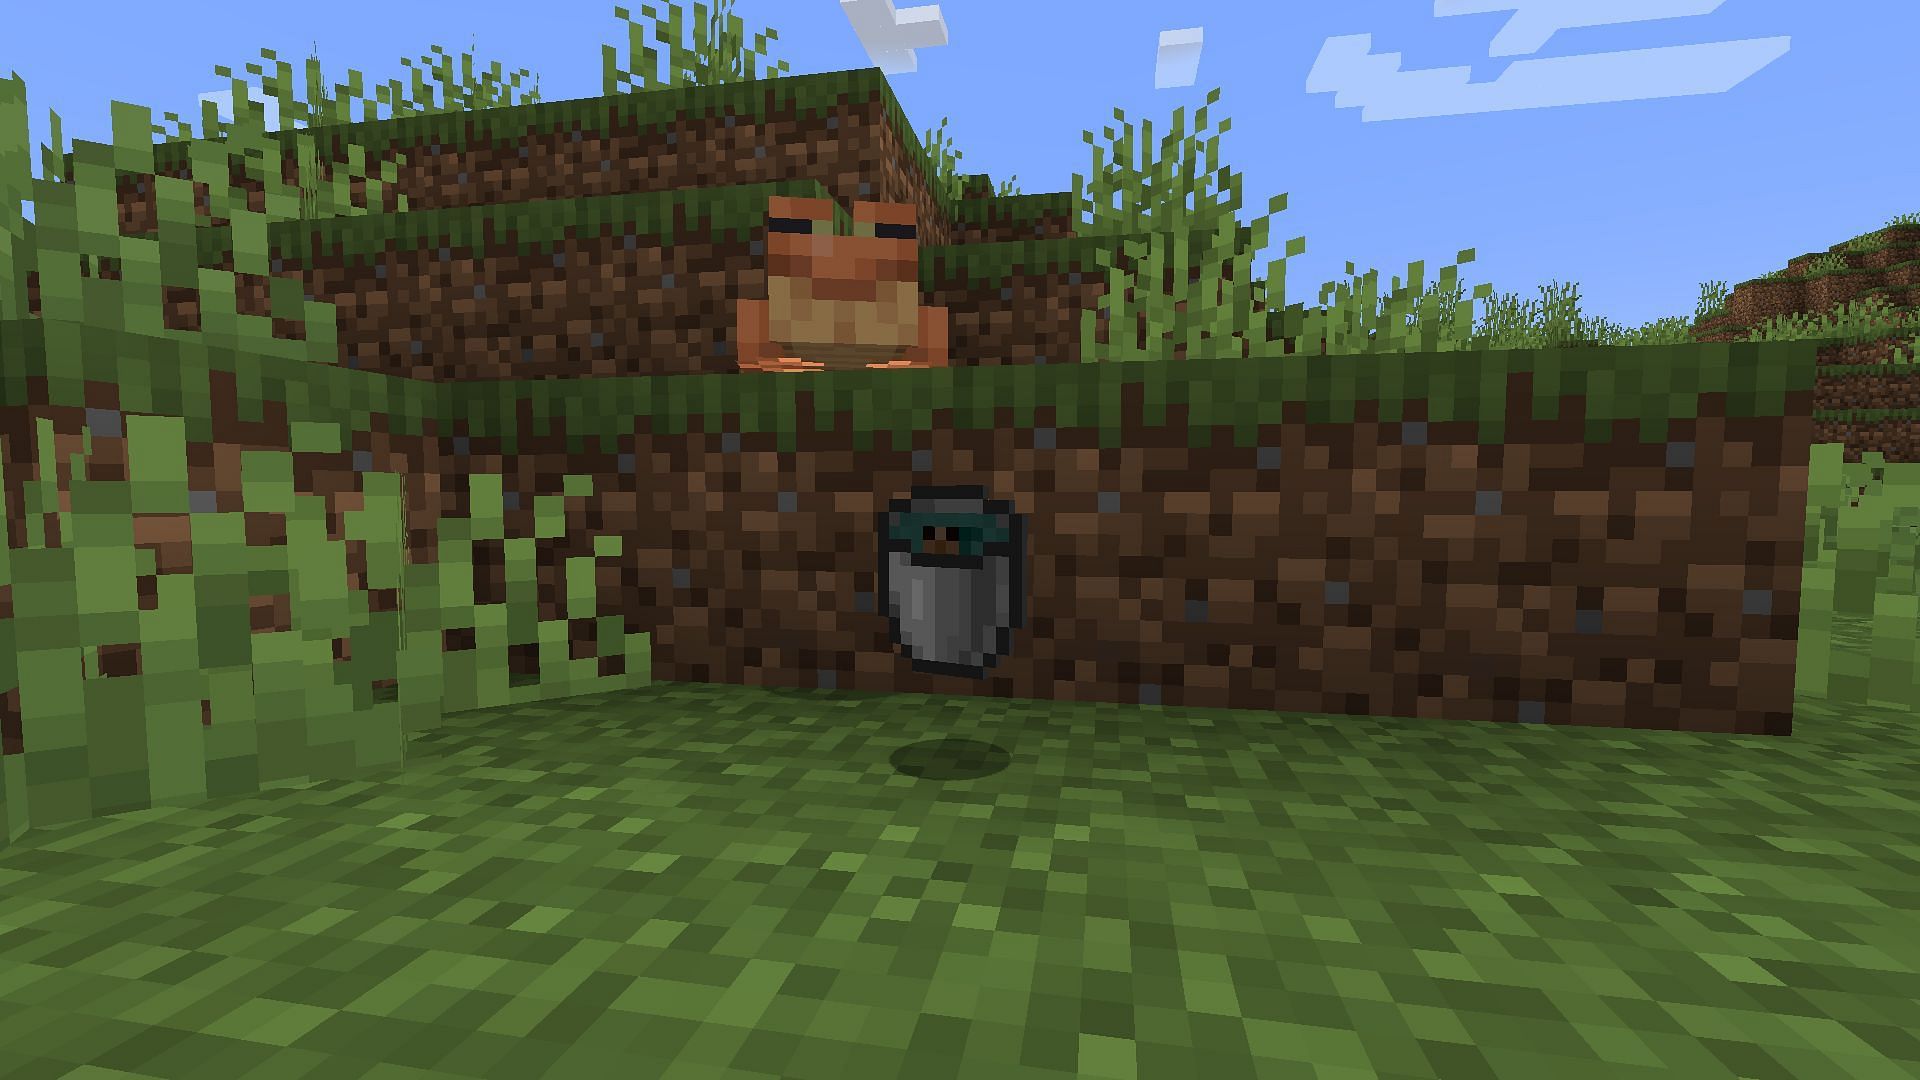 Tadpoles in a bucket (Image via Minecraft)